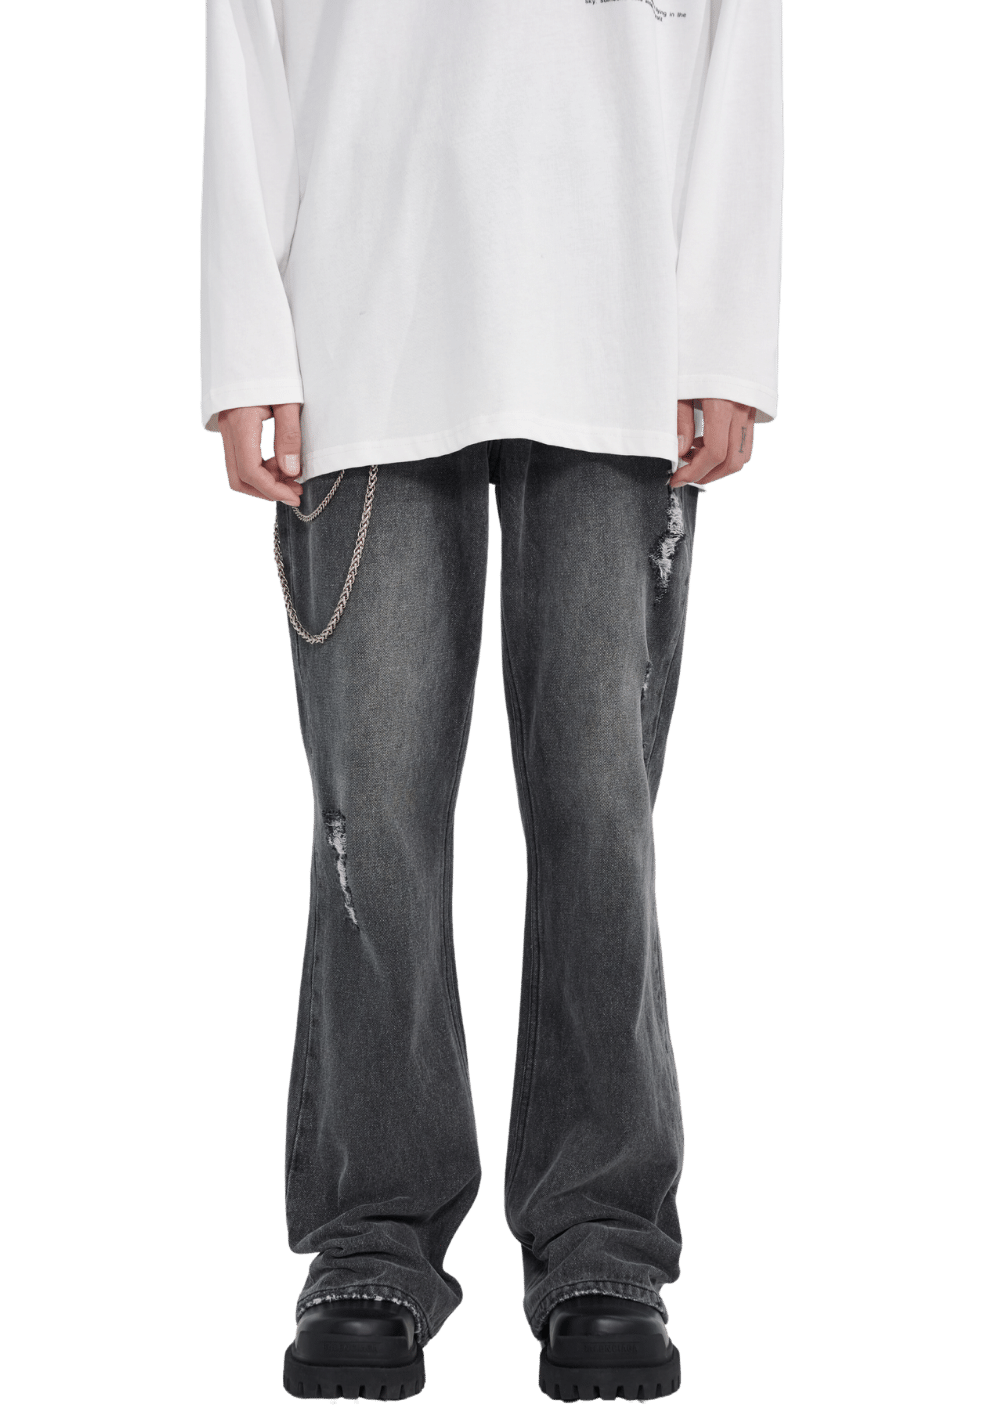 Distressed Washed Denim Jeans - PSYLOS 1, Distressed Washed Denim Jeans, Pants, PCLP, PSYLOS 1